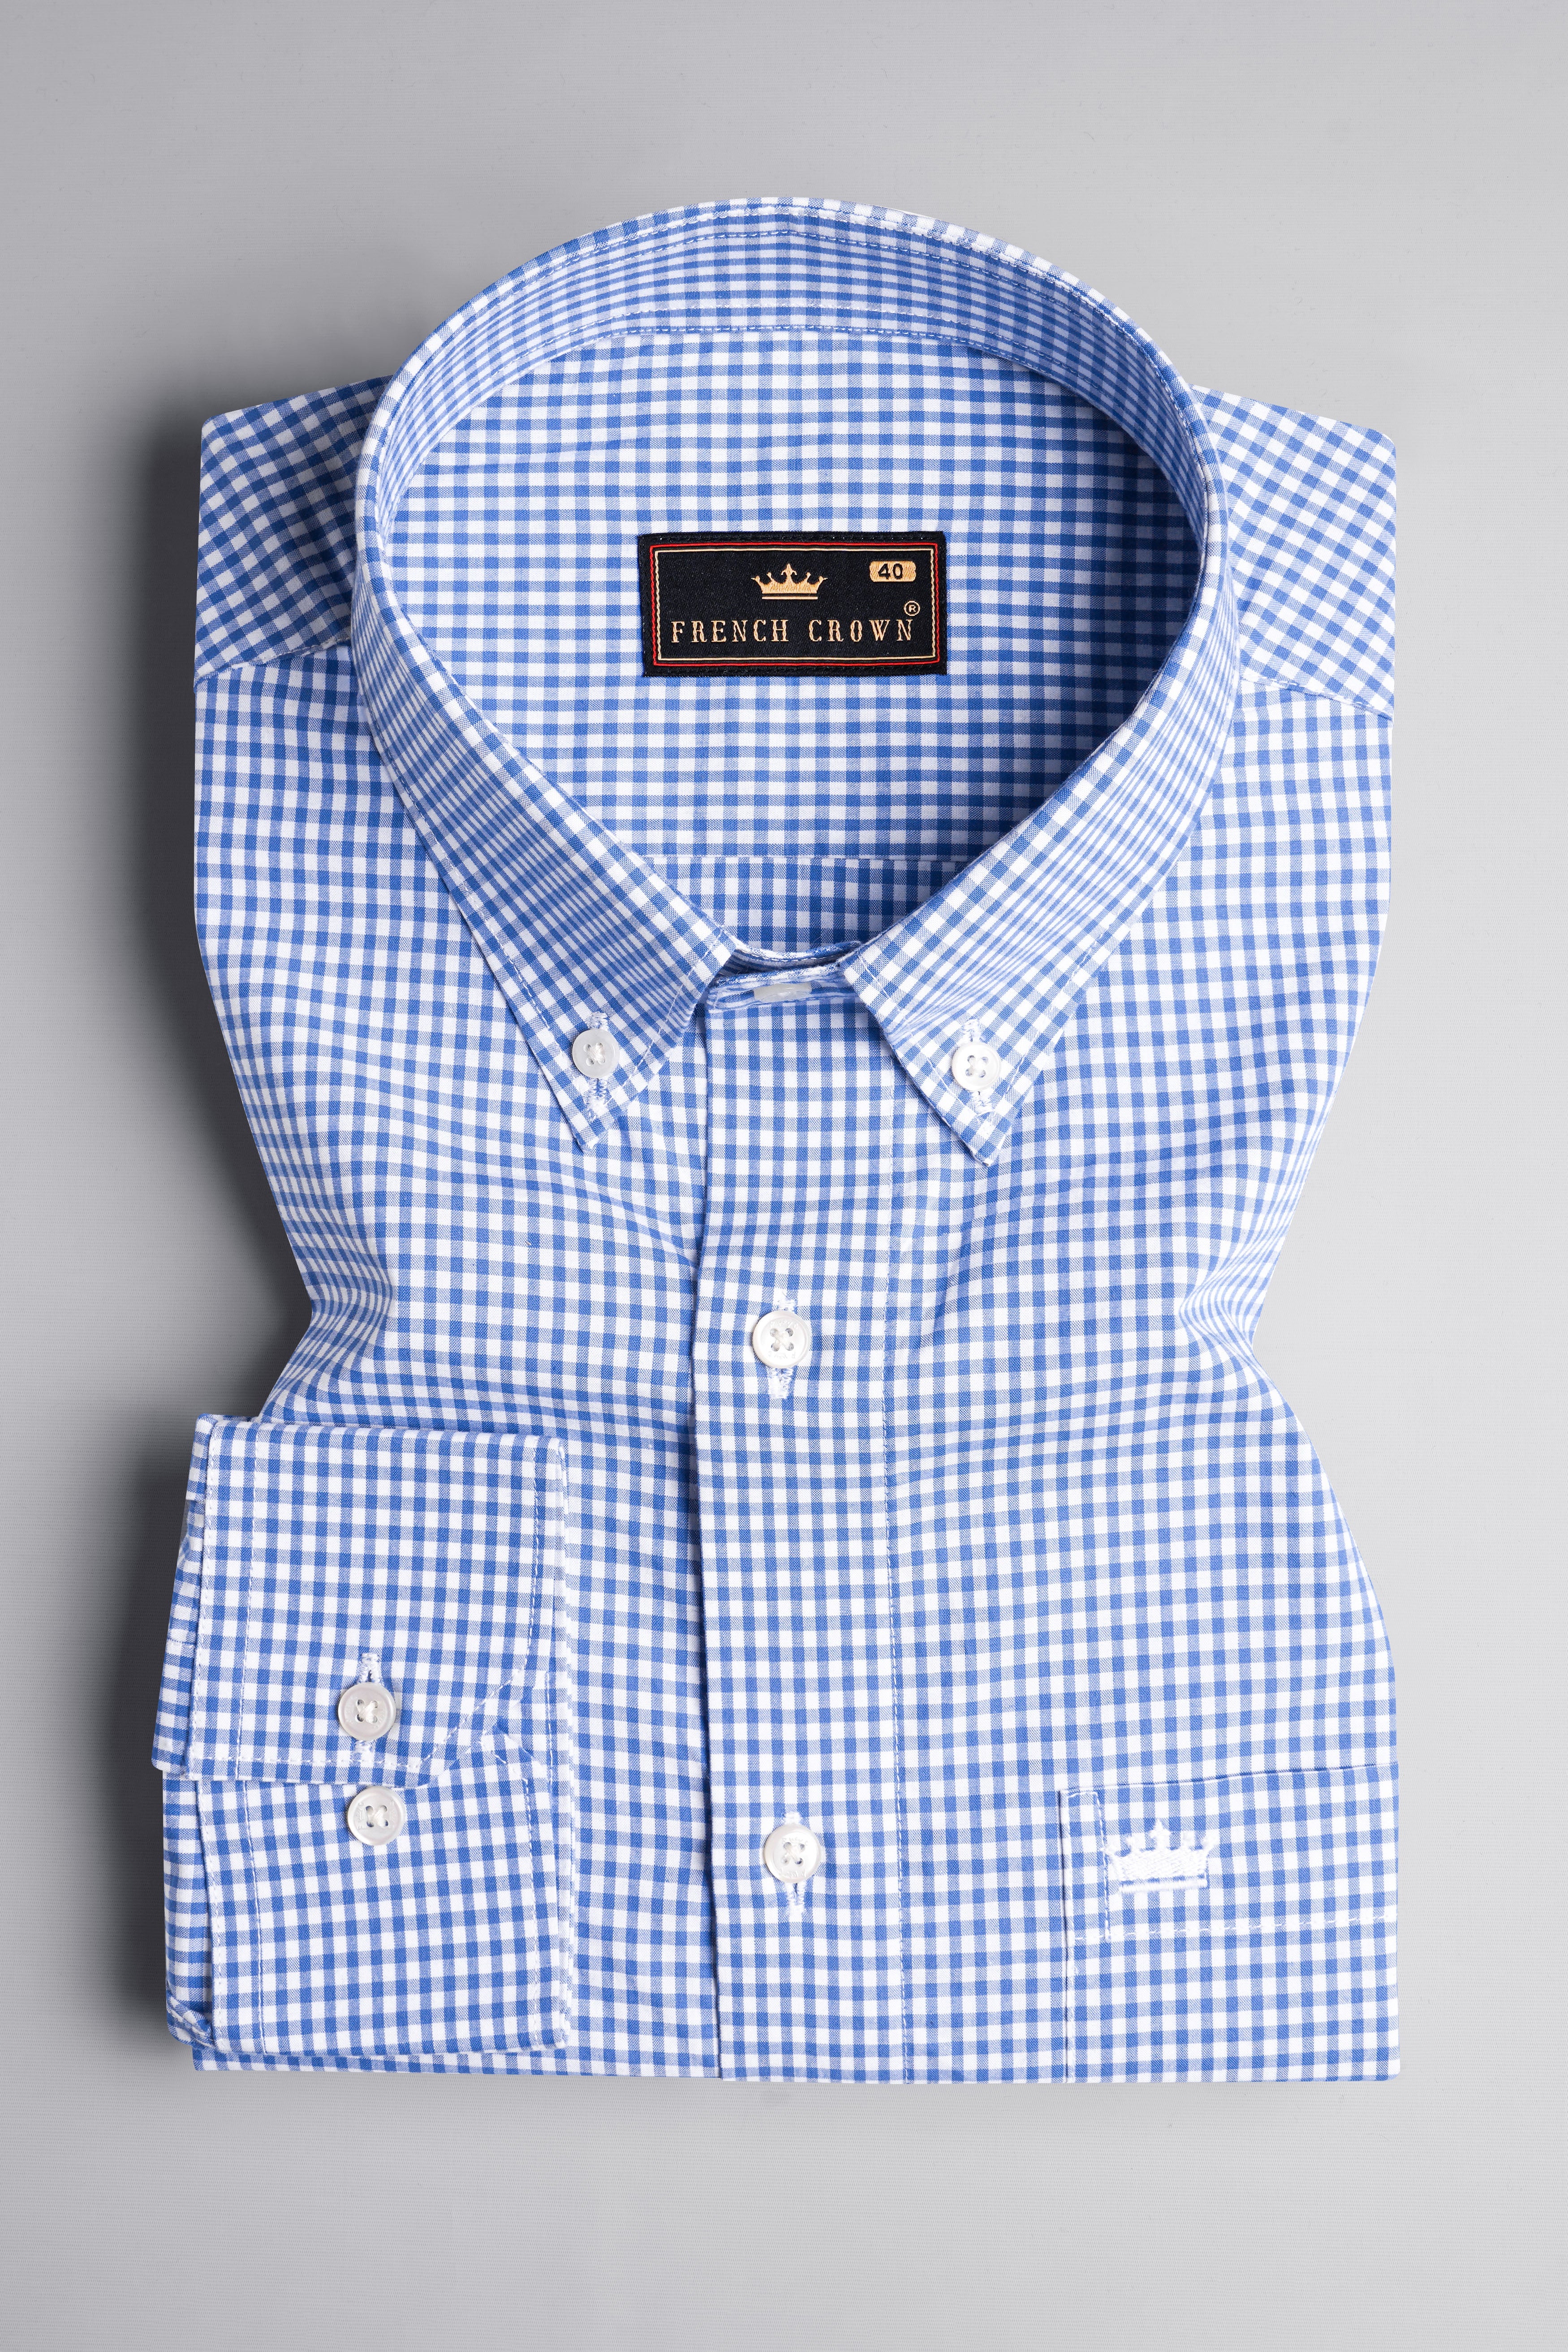 Carolina Blue and White Gingham Checkered Twill Premium Cotton Shirt